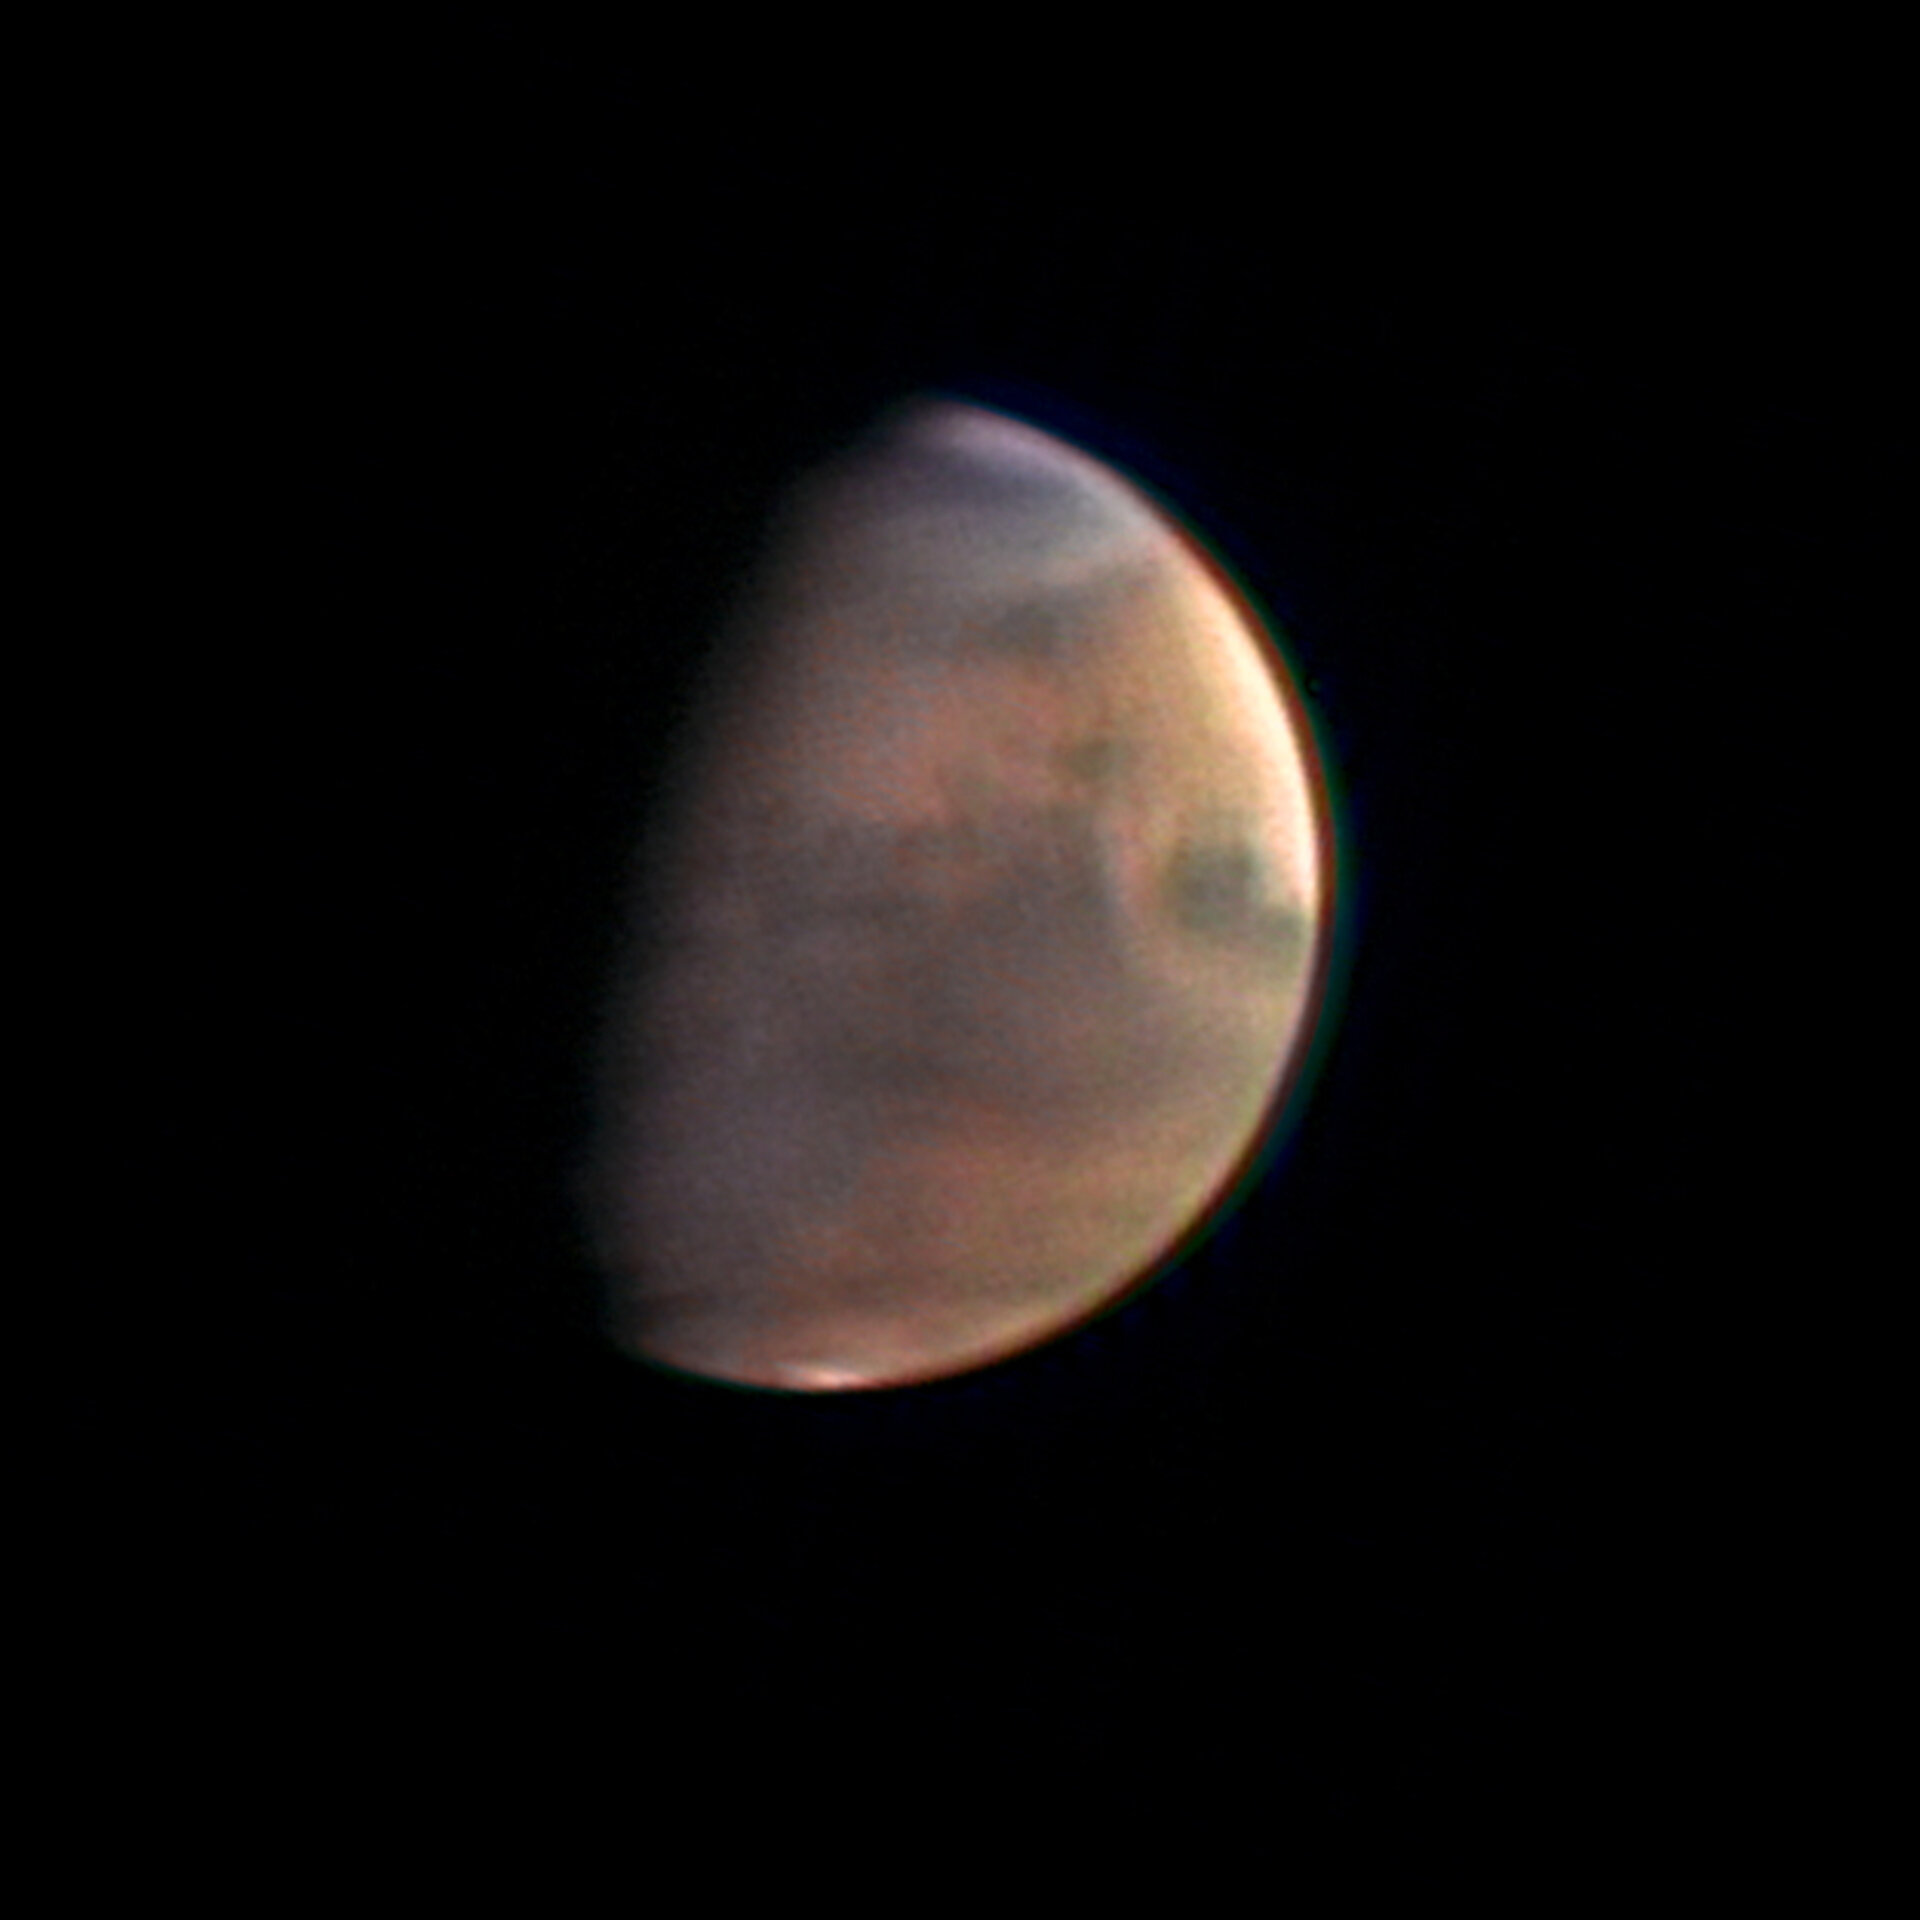 O planeta Marte a 5.5 milhões km, imagem de satélite obtida a 1 de Dezembro